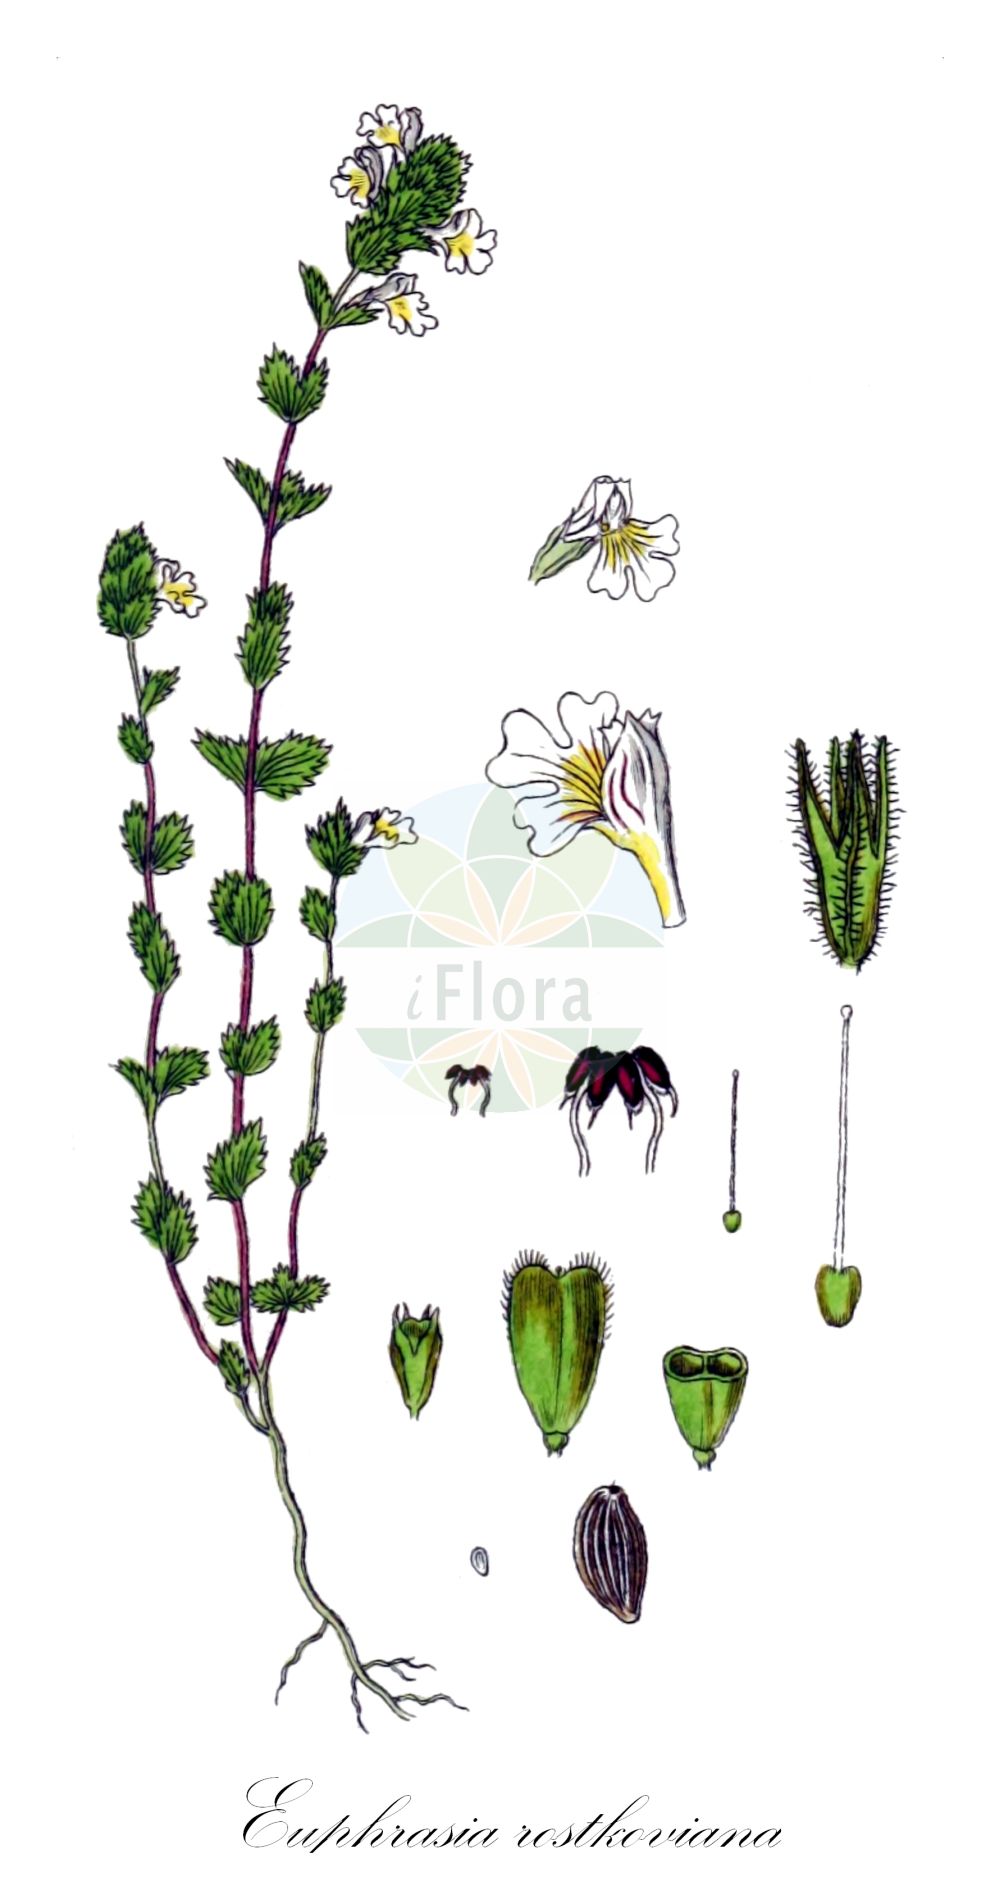 Historische Abbildung von Euphrasia rostkoviana (Bunter Augentrost - Eyebright). Das Bild zeigt Blatt, Bluete, Frucht und Same. ---- Historical Drawing of Euphrasia rostkoviana (Bunter Augentrost - Eyebright). The image is showing leaf, flower, fruit and seed.(Euphrasia rostkoviana,Bunter Augentrost,Eyebright,Euphrasia officinalis,Euphrasia pratensis,Euphrasia rostkoviana,Bunter Augentrost,Gewoehnlicher Augentrost,Grosser Augentrost,Wiesen-Augentrost,Eyebright,Euphrasia,Augentrost,Eyebright,Orobanchaceae,Sommerwurzgewächse,Broomrape family,Blatt,Bluete,Frucht,Same,leaf,flower,fruit,seed,Sturm (1796f))